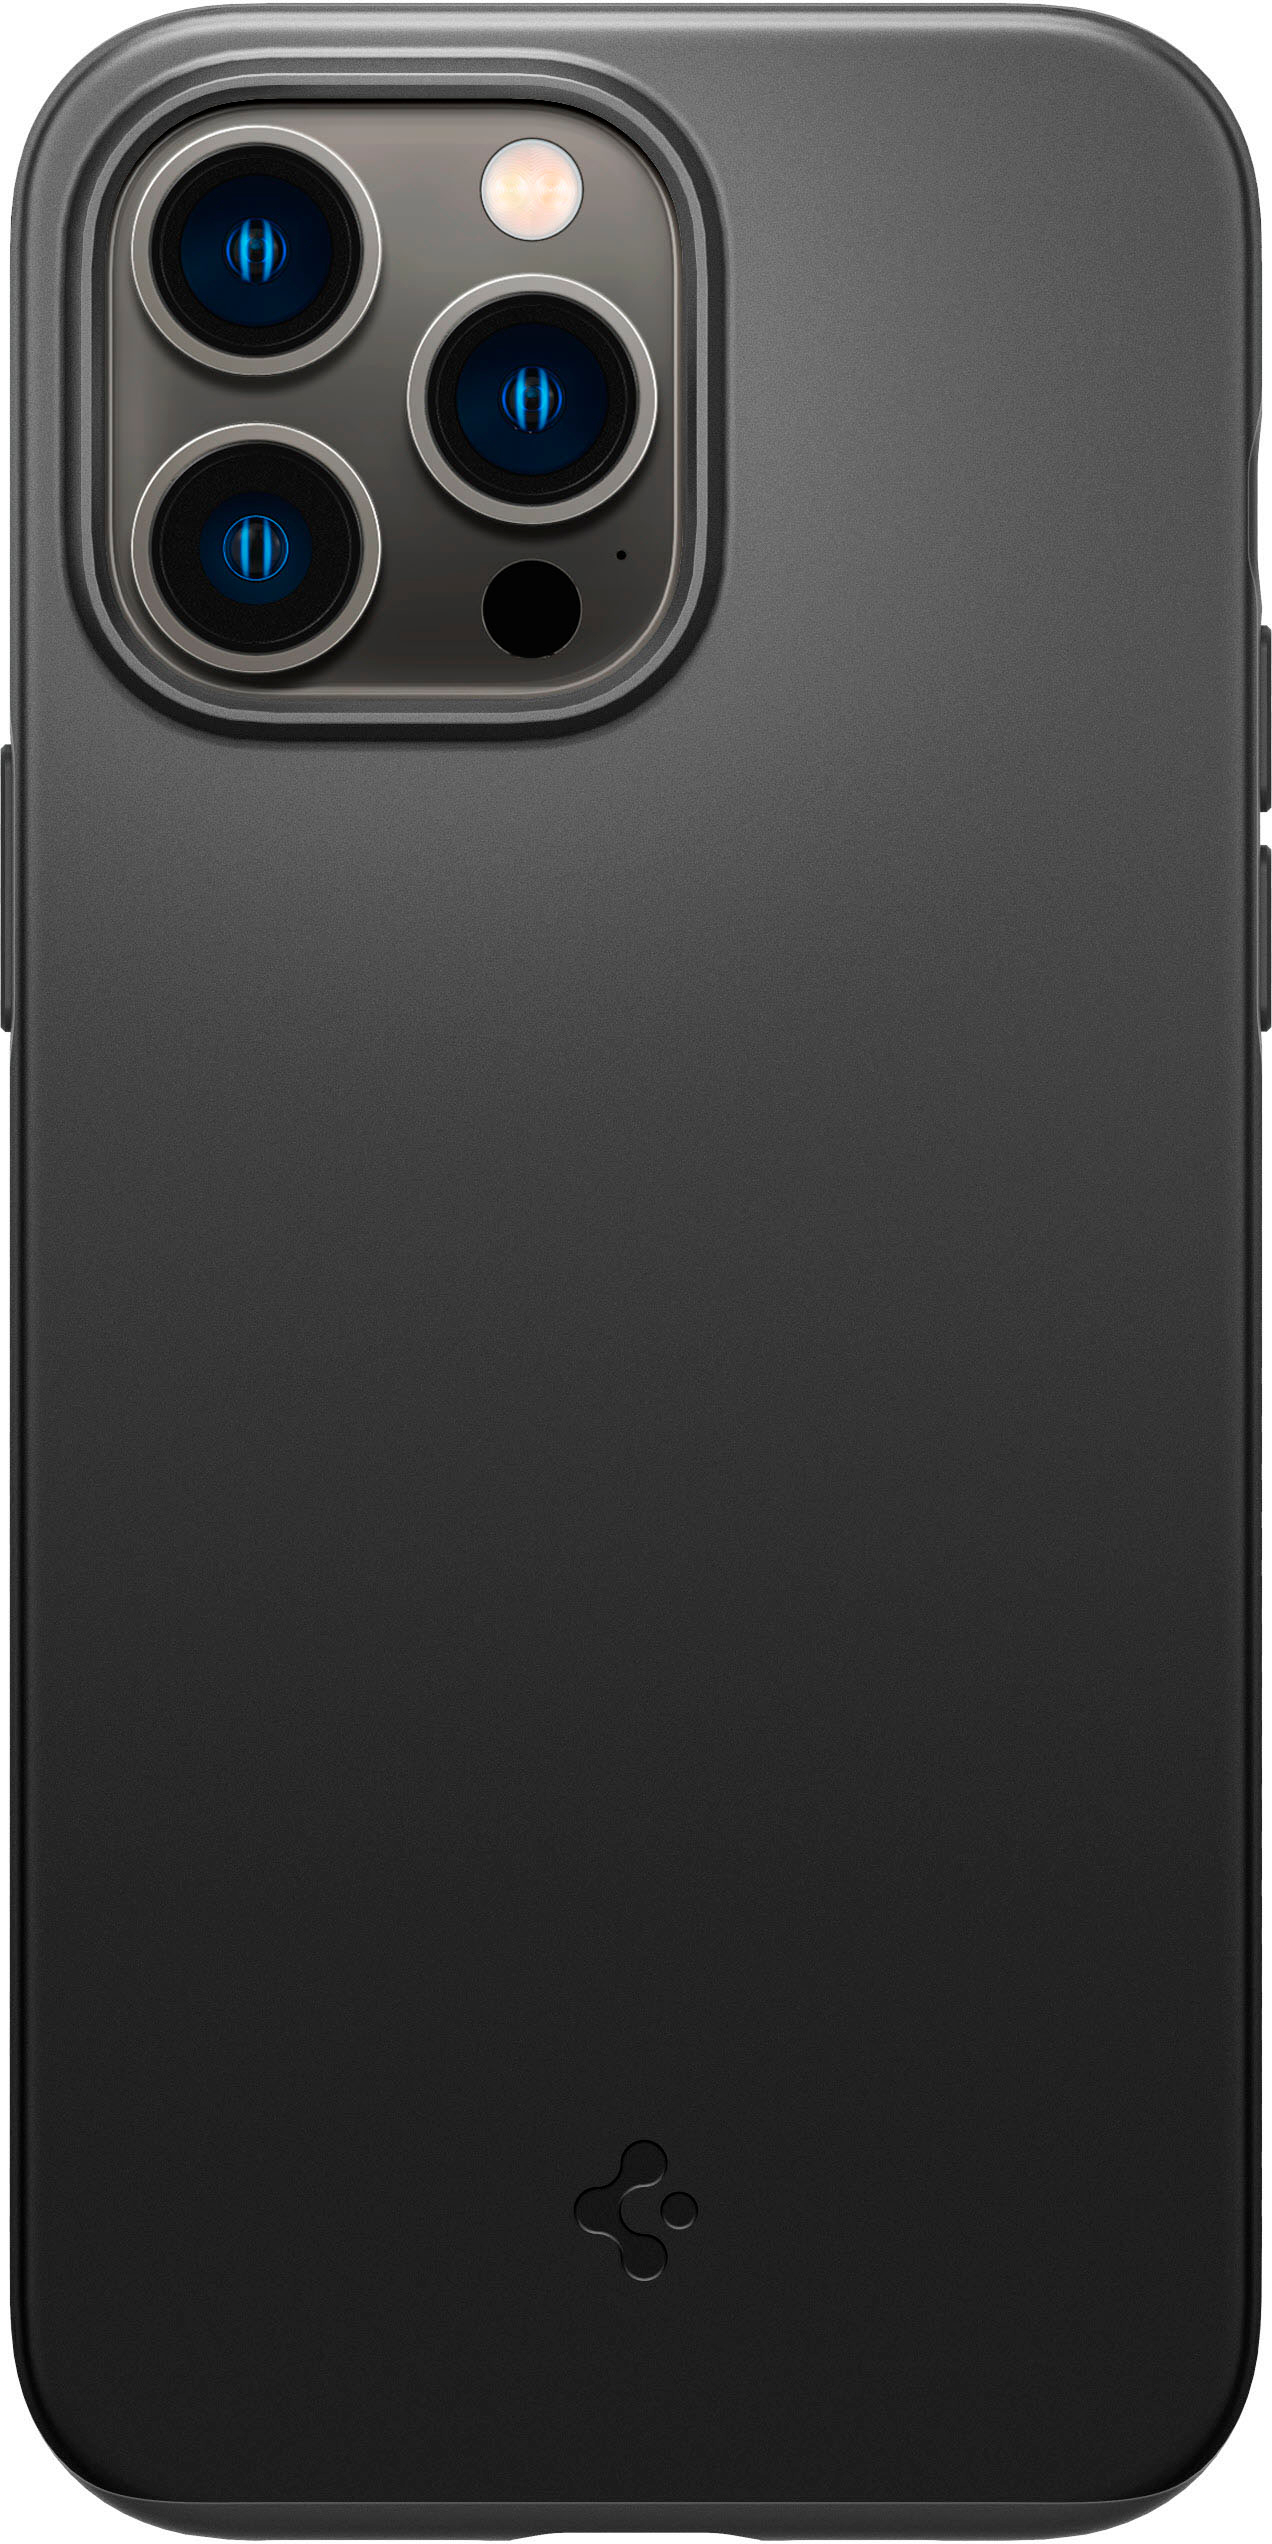 iPhone 11 Series Thin Fit Case -  Official Site – Spigen Inc